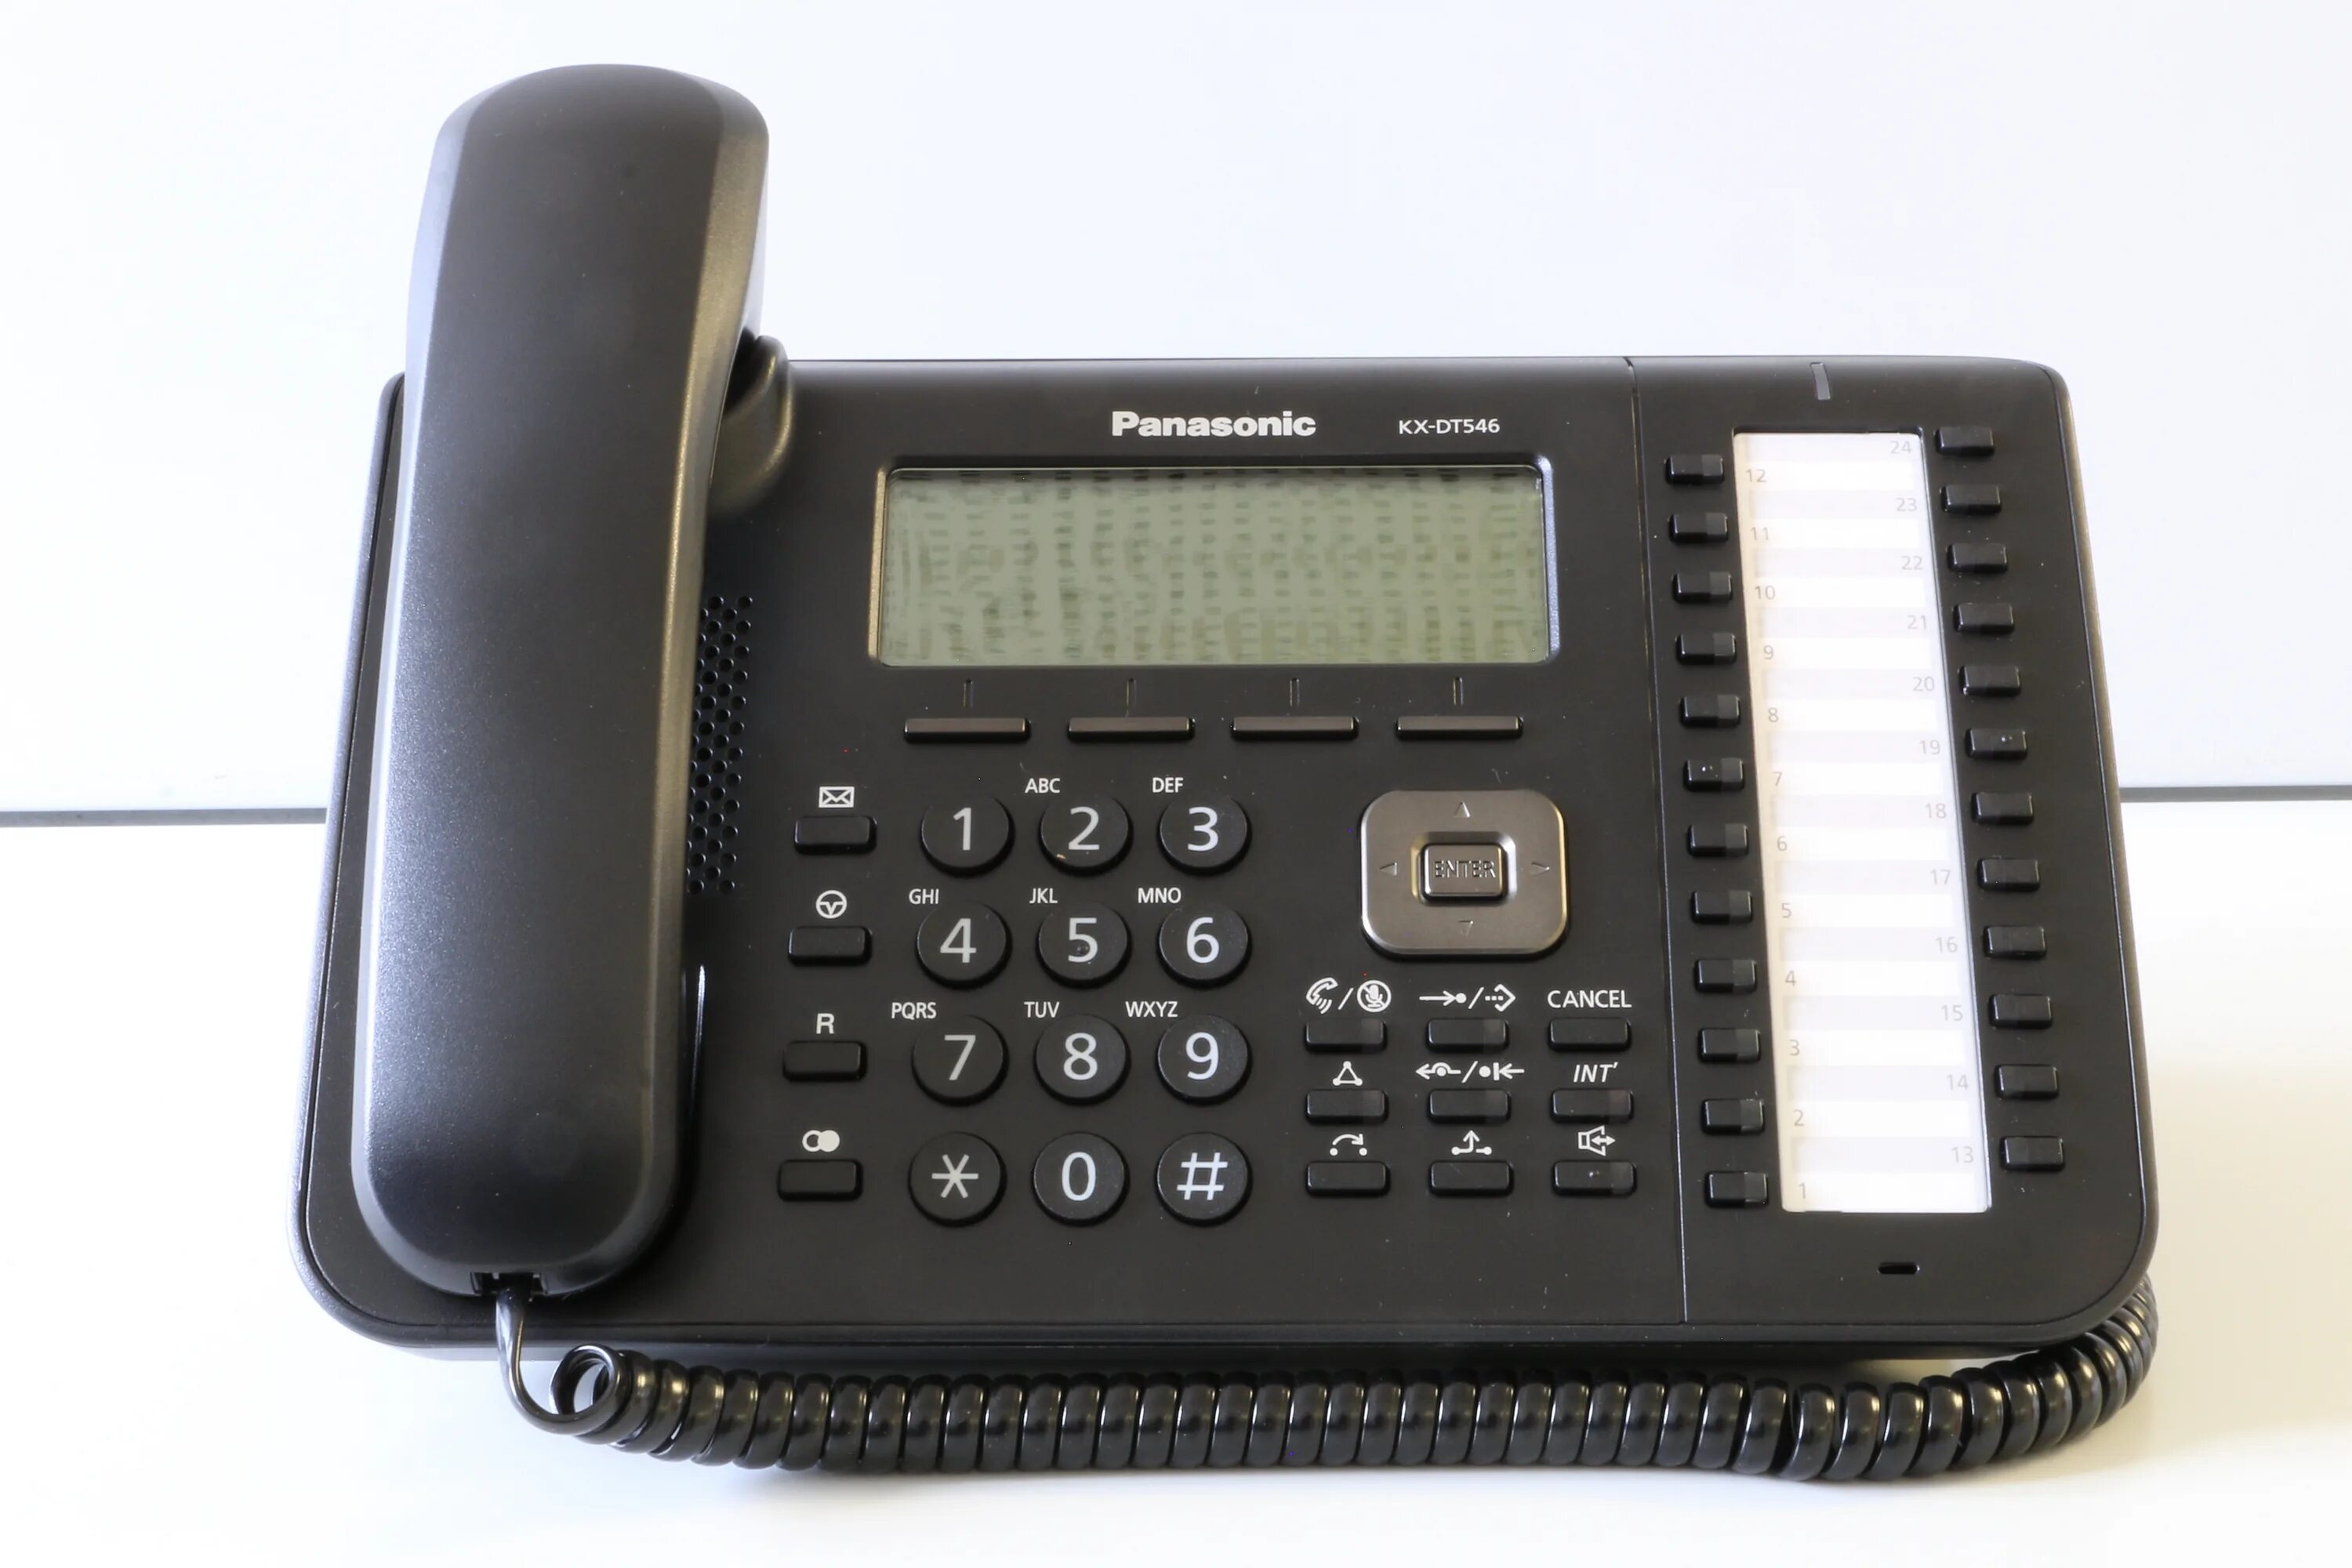 Автоответчик стационарный. Panasonic KX-dt546. IP телефон Панасоник. Телефонный автоответчик. Стационарный телефон с автоответчиком.